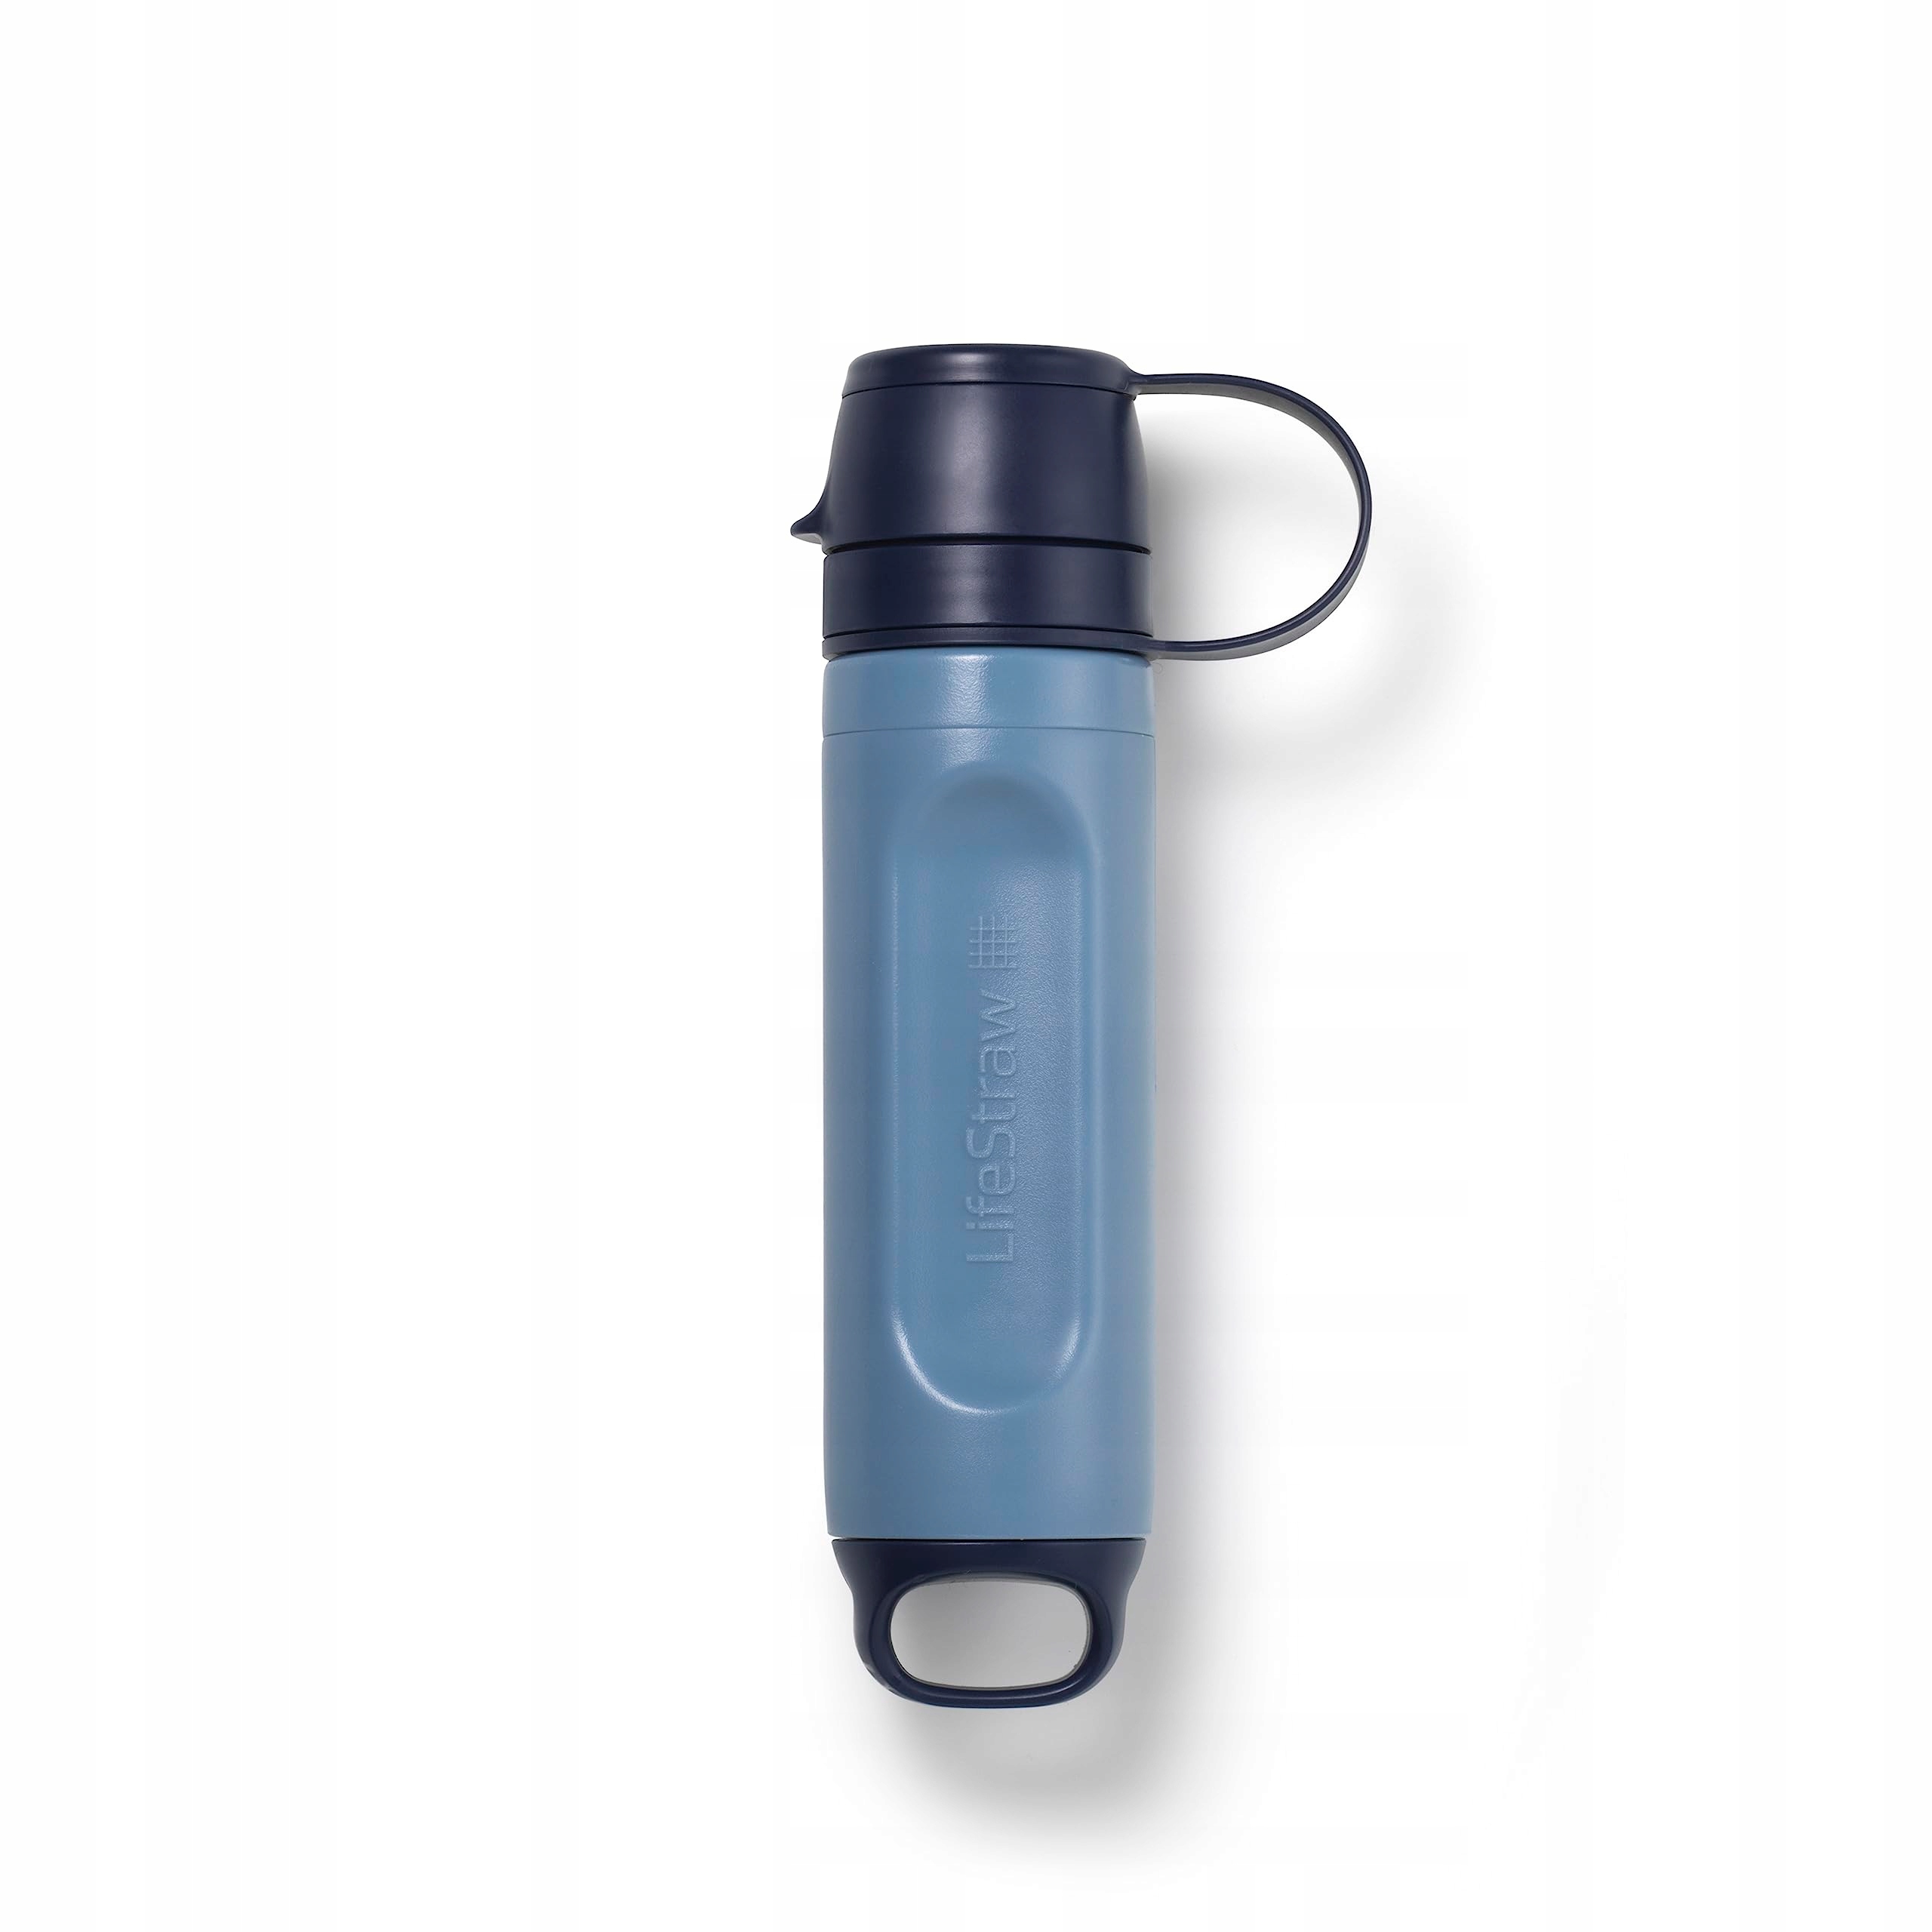 Vodní filtr LifeStraw Peak Solo filtruje 99,99% osobní brčko